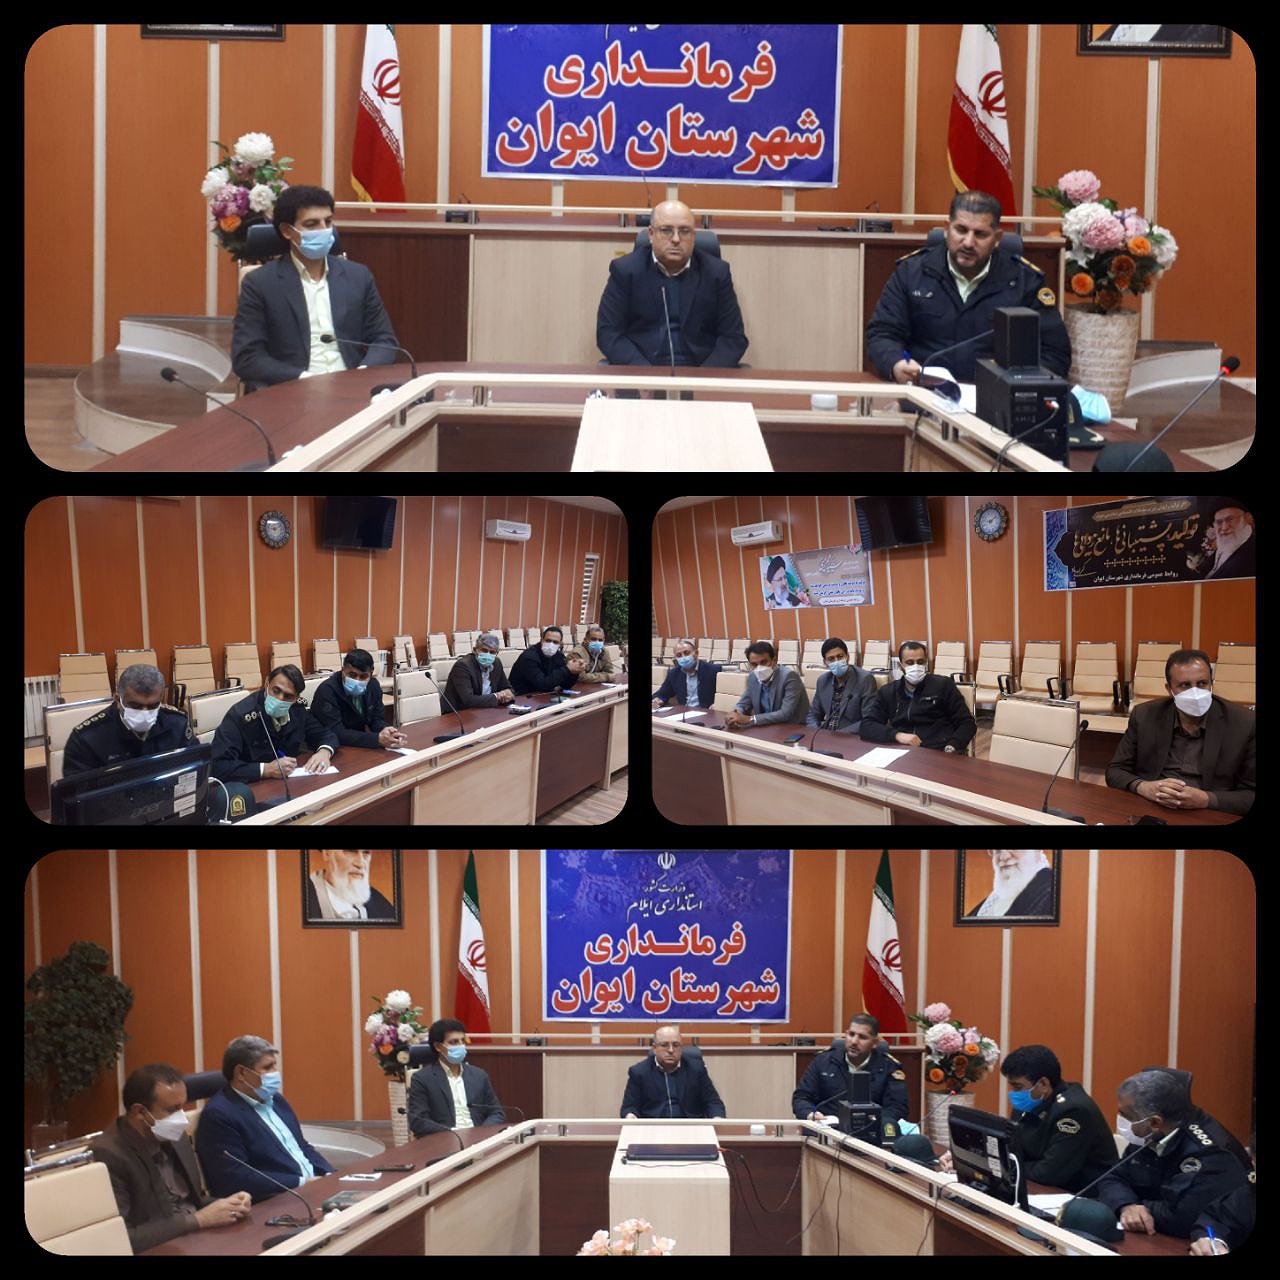 جلسه کمیسیون پیشگیری و مقابله با سرقت با حضور فرماندار شهرستان ایوان،